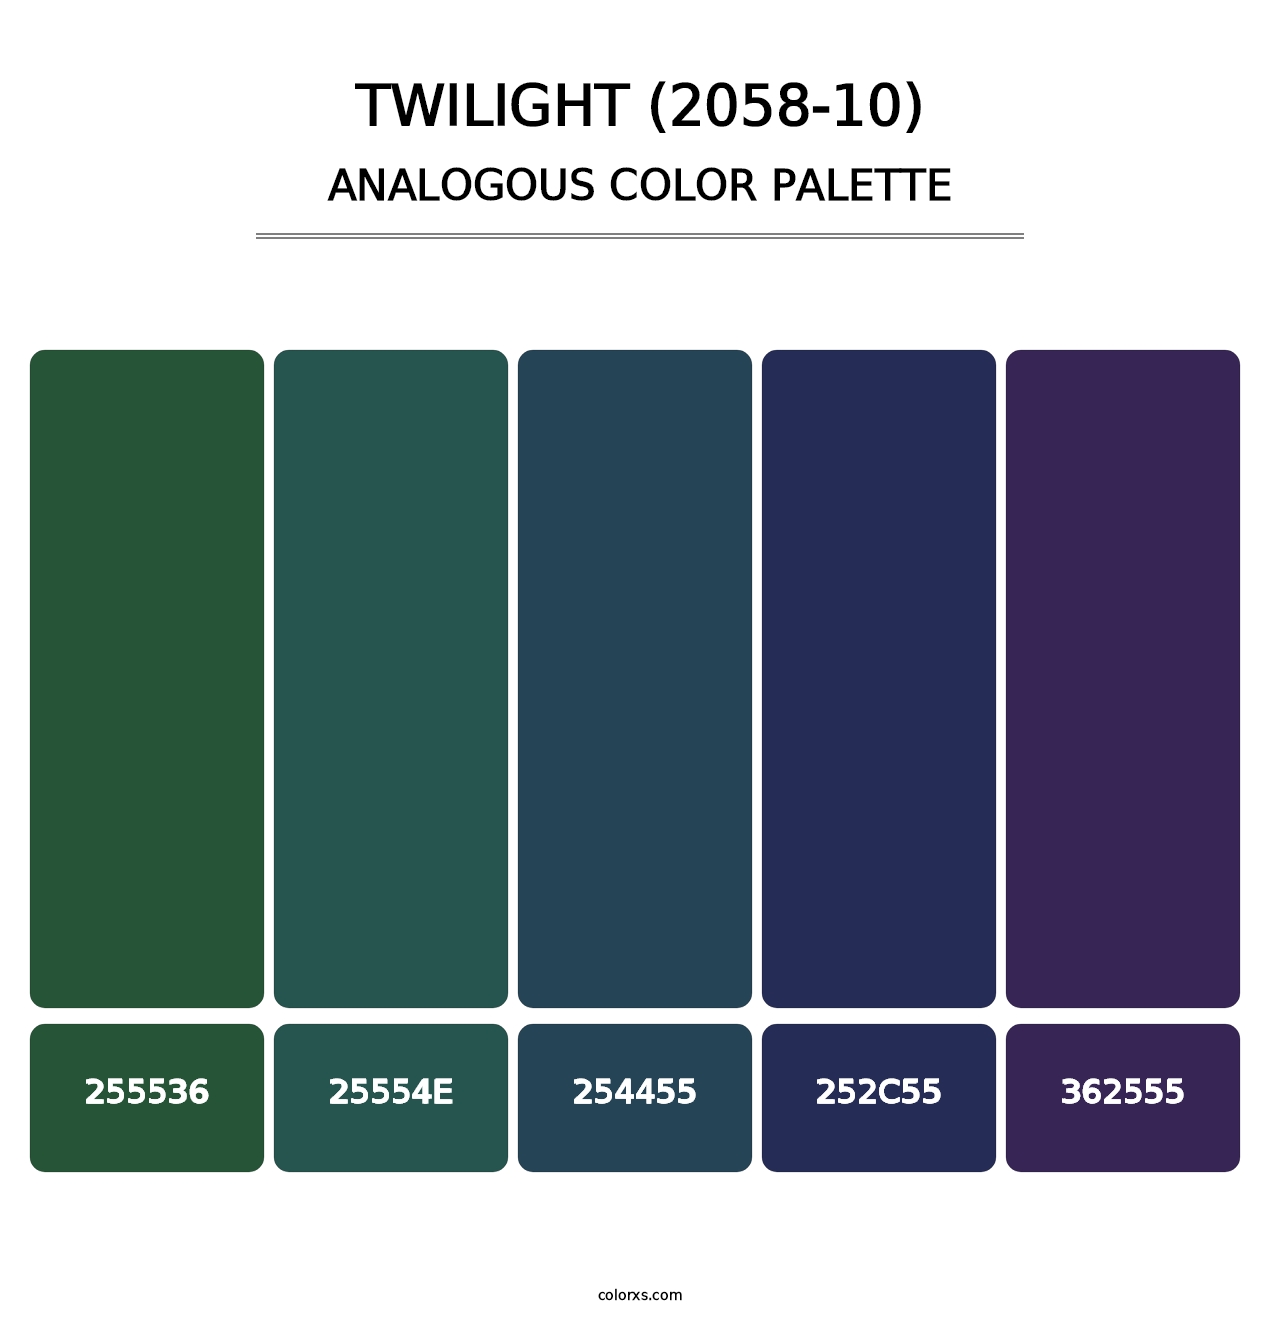 Twilight (2058-10) - Analogous Color Palette